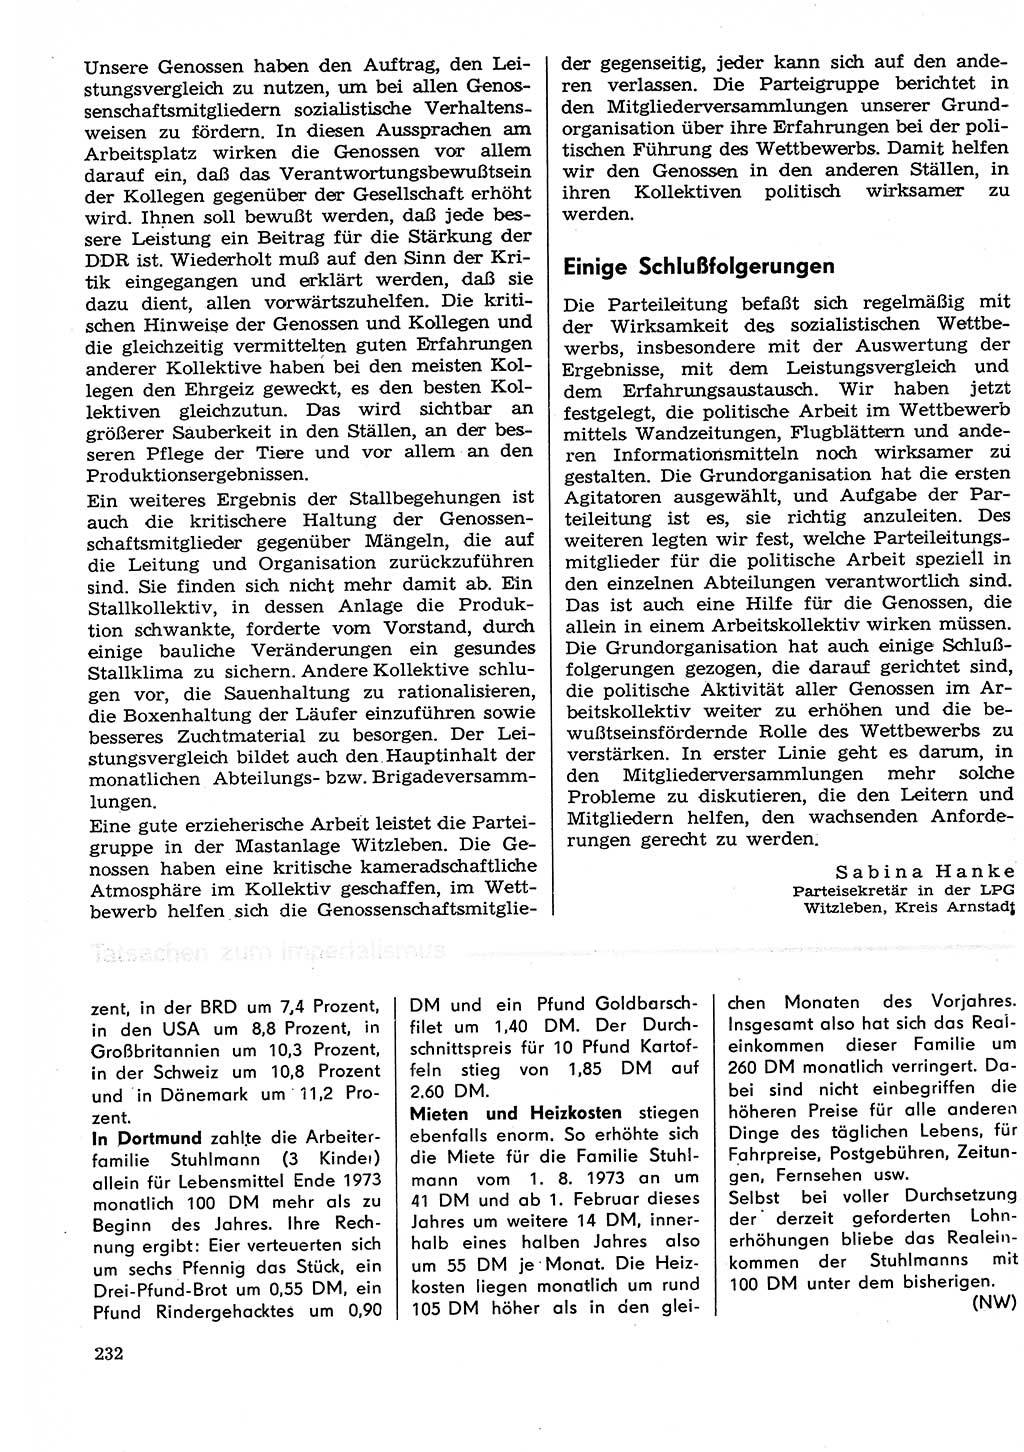 Neuer Weg (NW), Organ des Zentralkomitees (ZK) der SED (Sozialistische Einheitspartei Deutschlands) für Fragen des Parteilebens, 29. Jahrgang [Deutsche Demokratische Republik (DDR)] 1974, Seite 232 (NW ZK SED DDR 1974, S. 232)